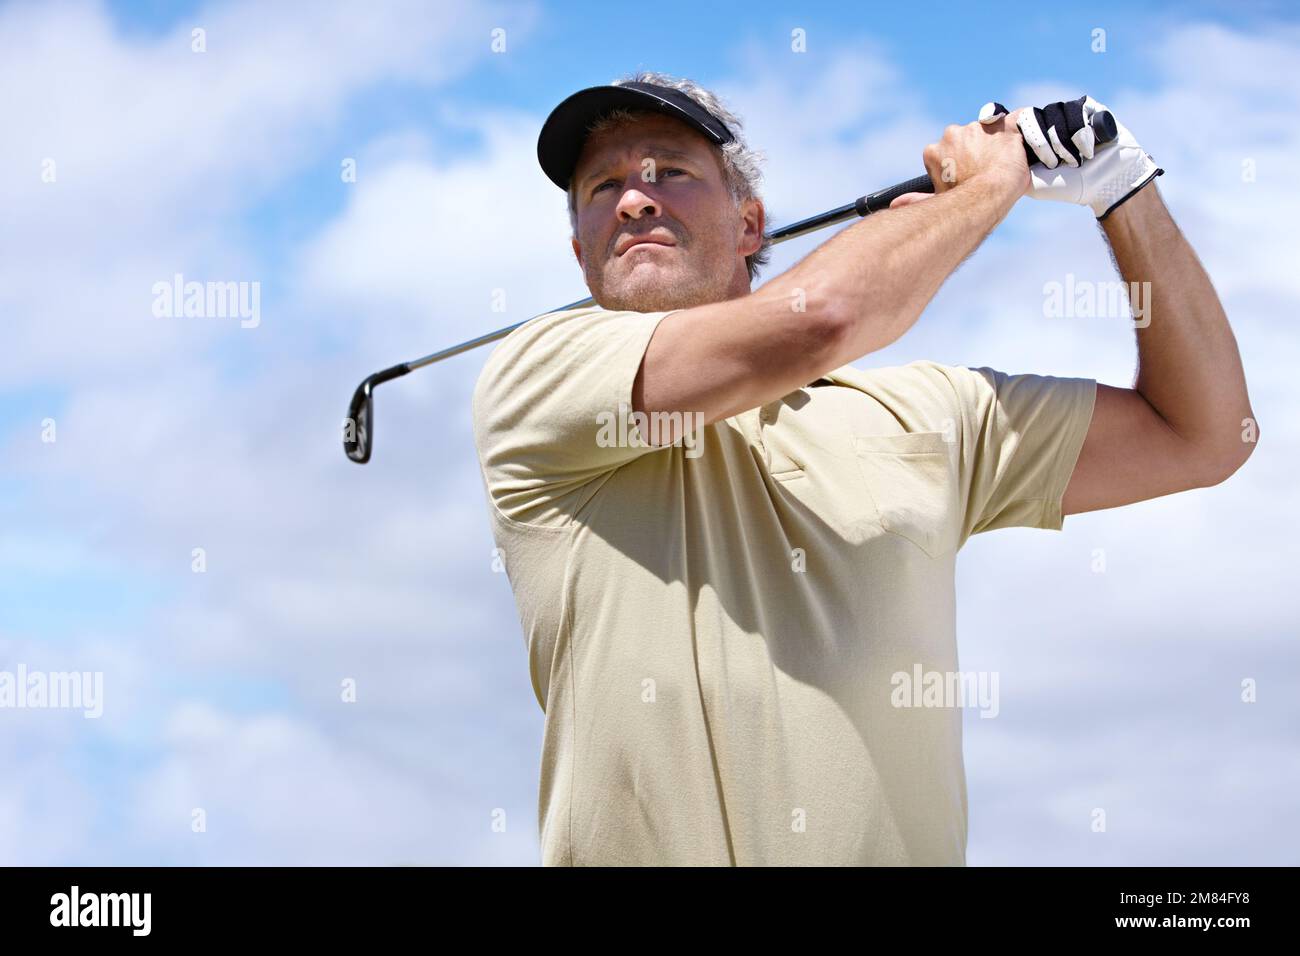 Mantieni la destra. Basso angolo sparato di un giocatore di golf maturo nella sua oscillazione posteriore. Foto Stock